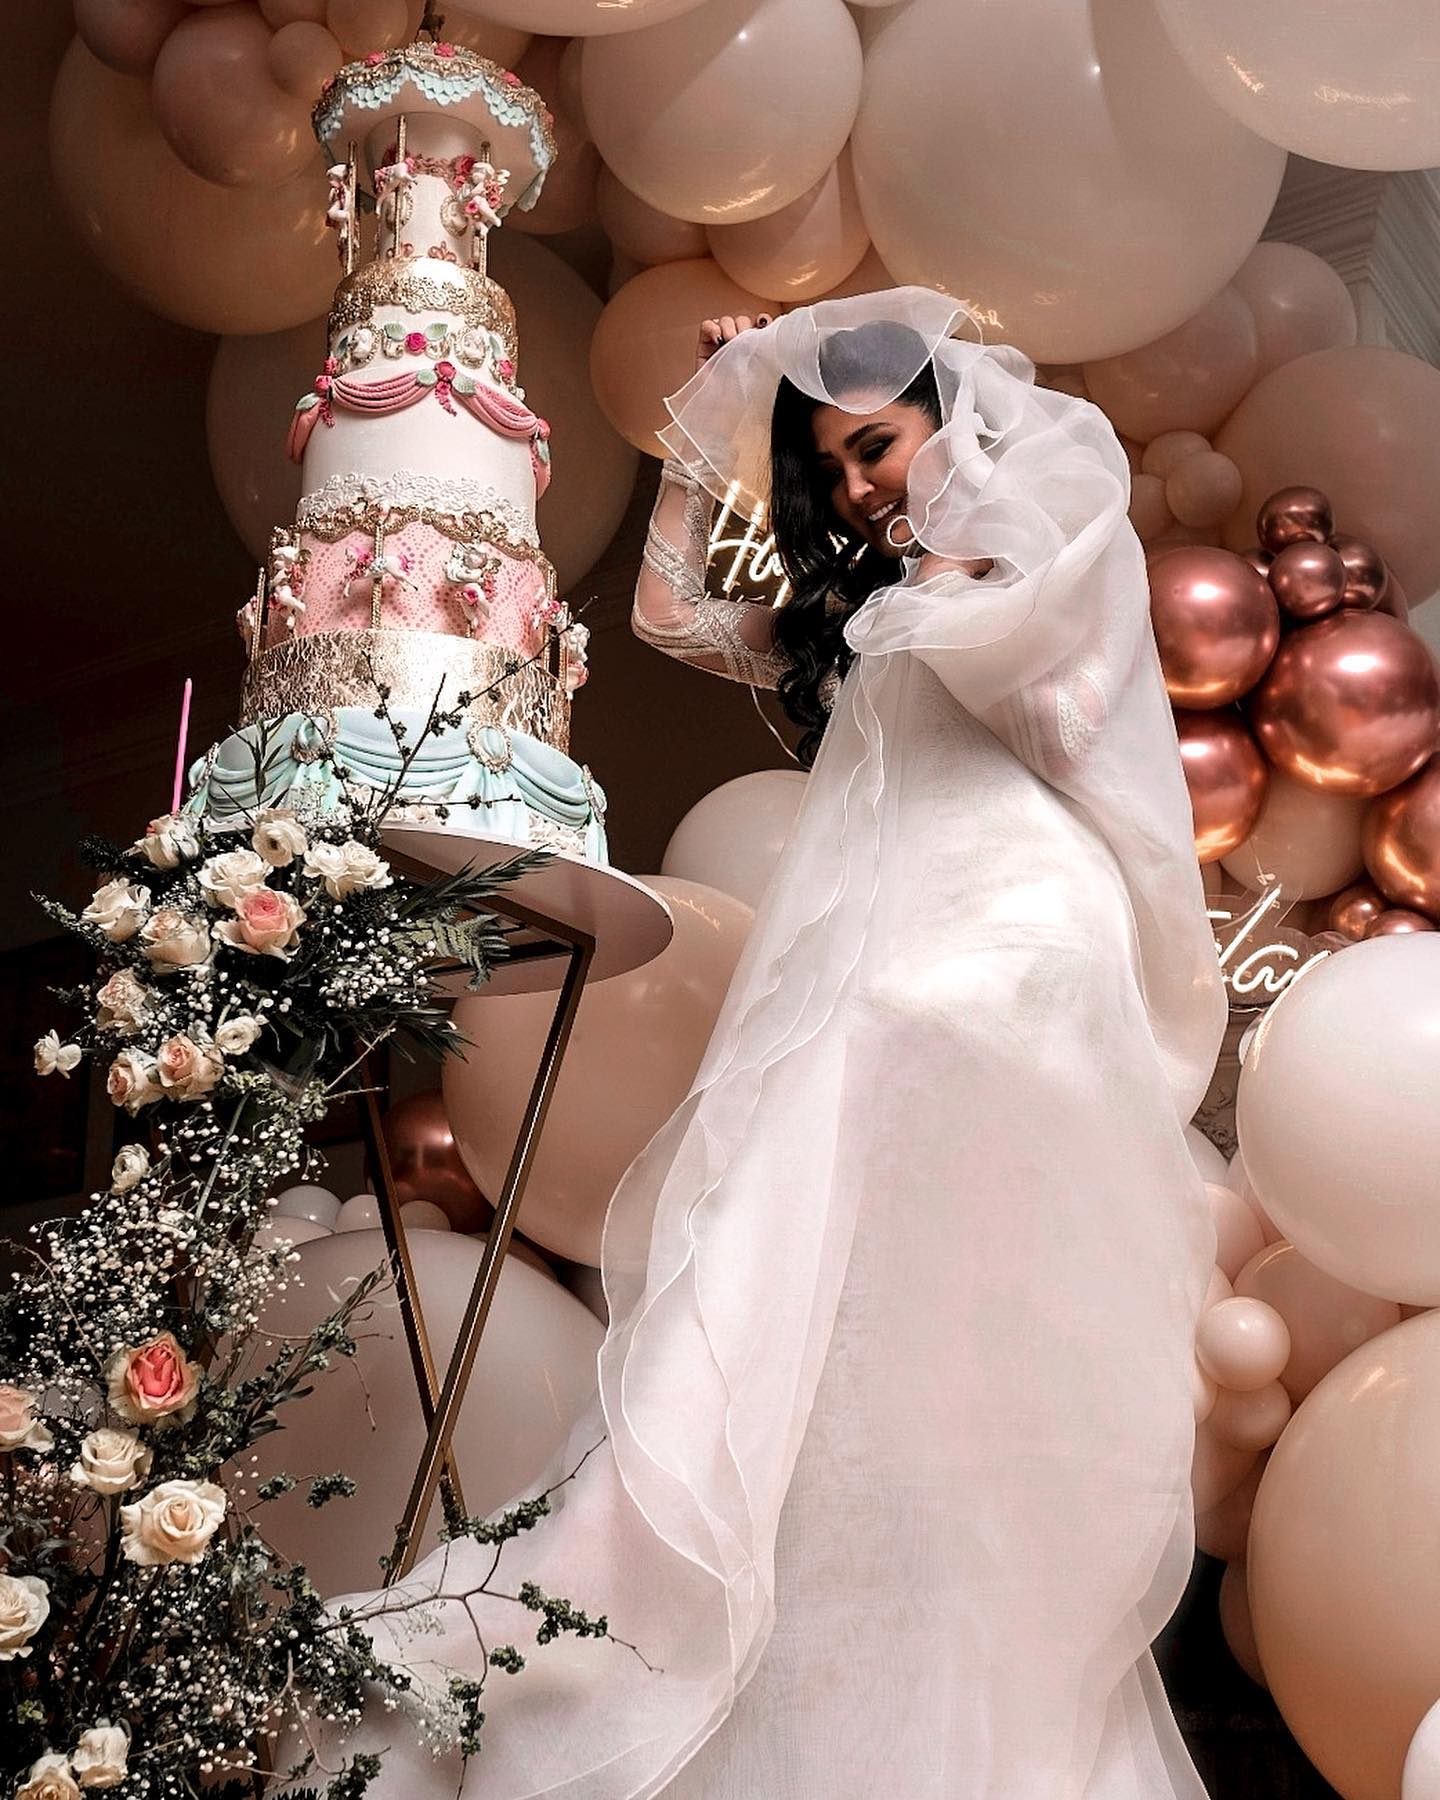 رونمایی مریم معصومی از لباس عروس لاکچریش